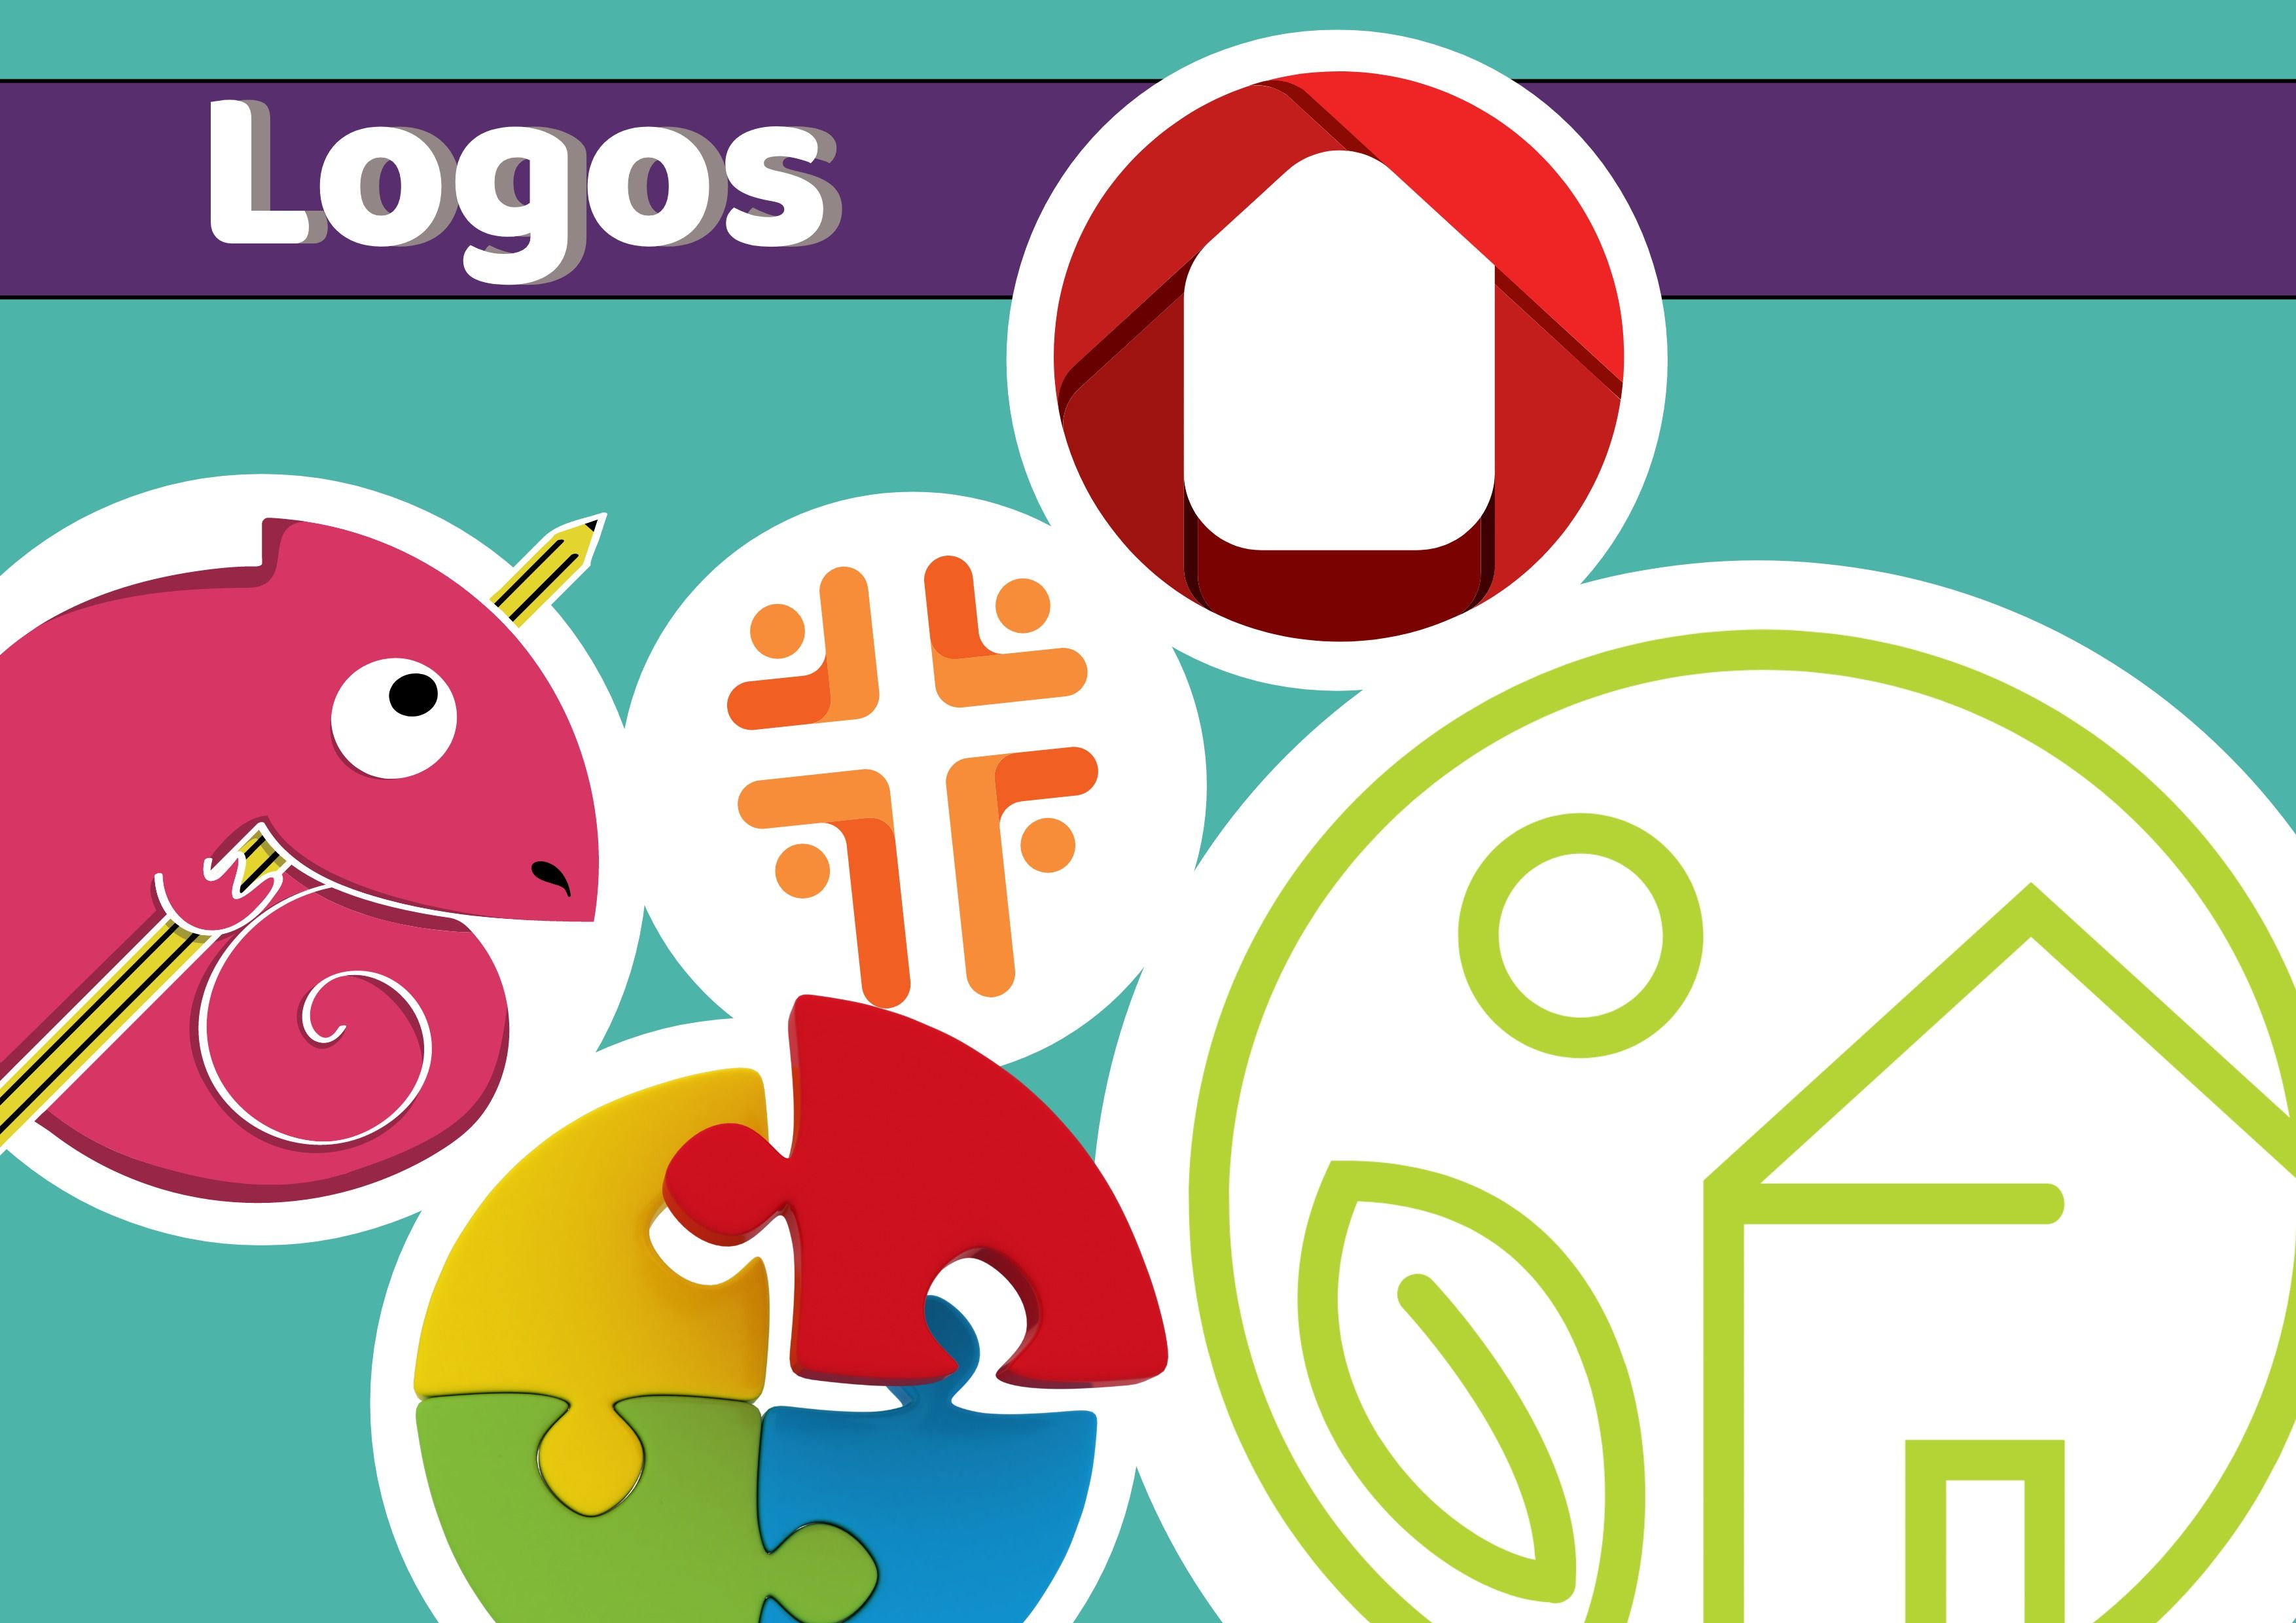 Imagen de logotipos que incluye ejemplos de logotipos circulares coloridos